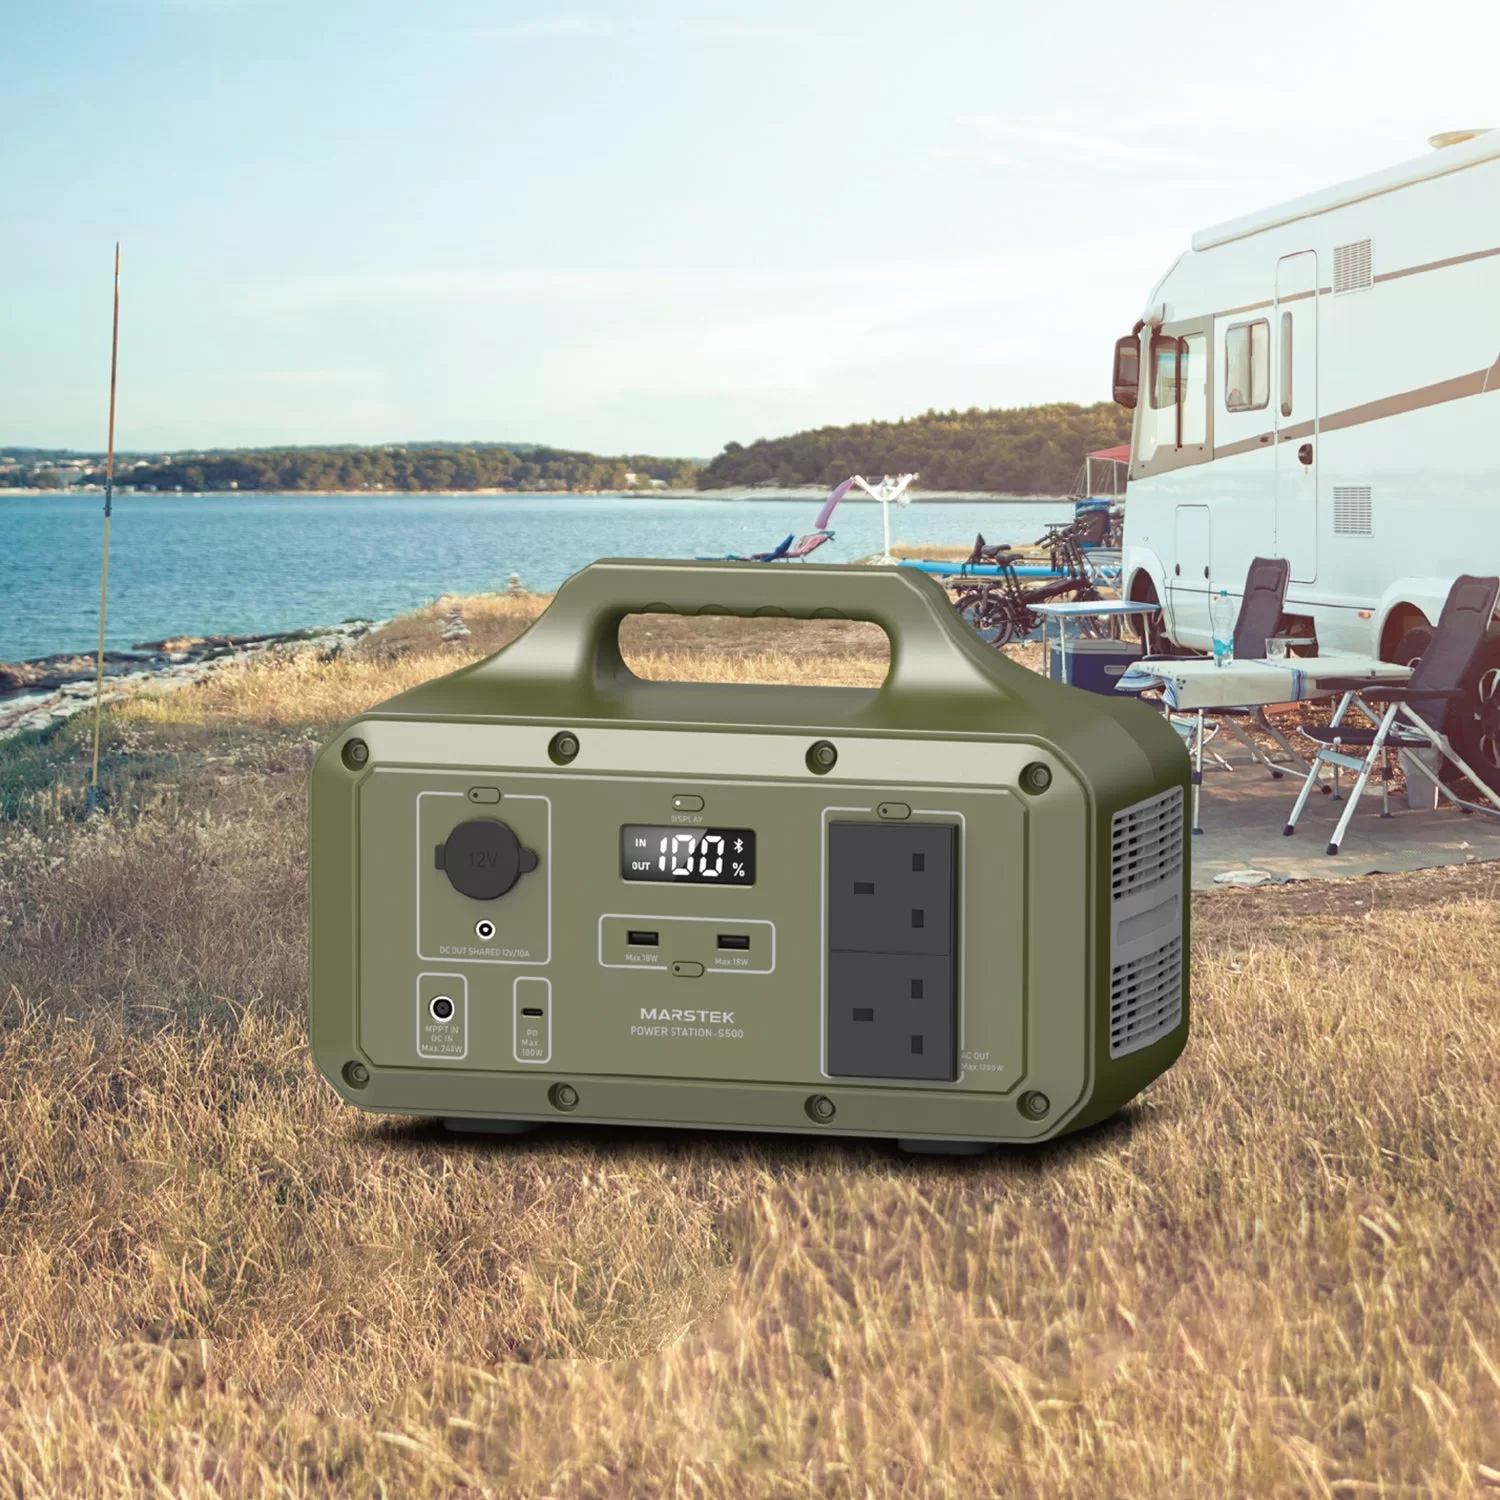 Marstek S500S Portable Power Station Camping